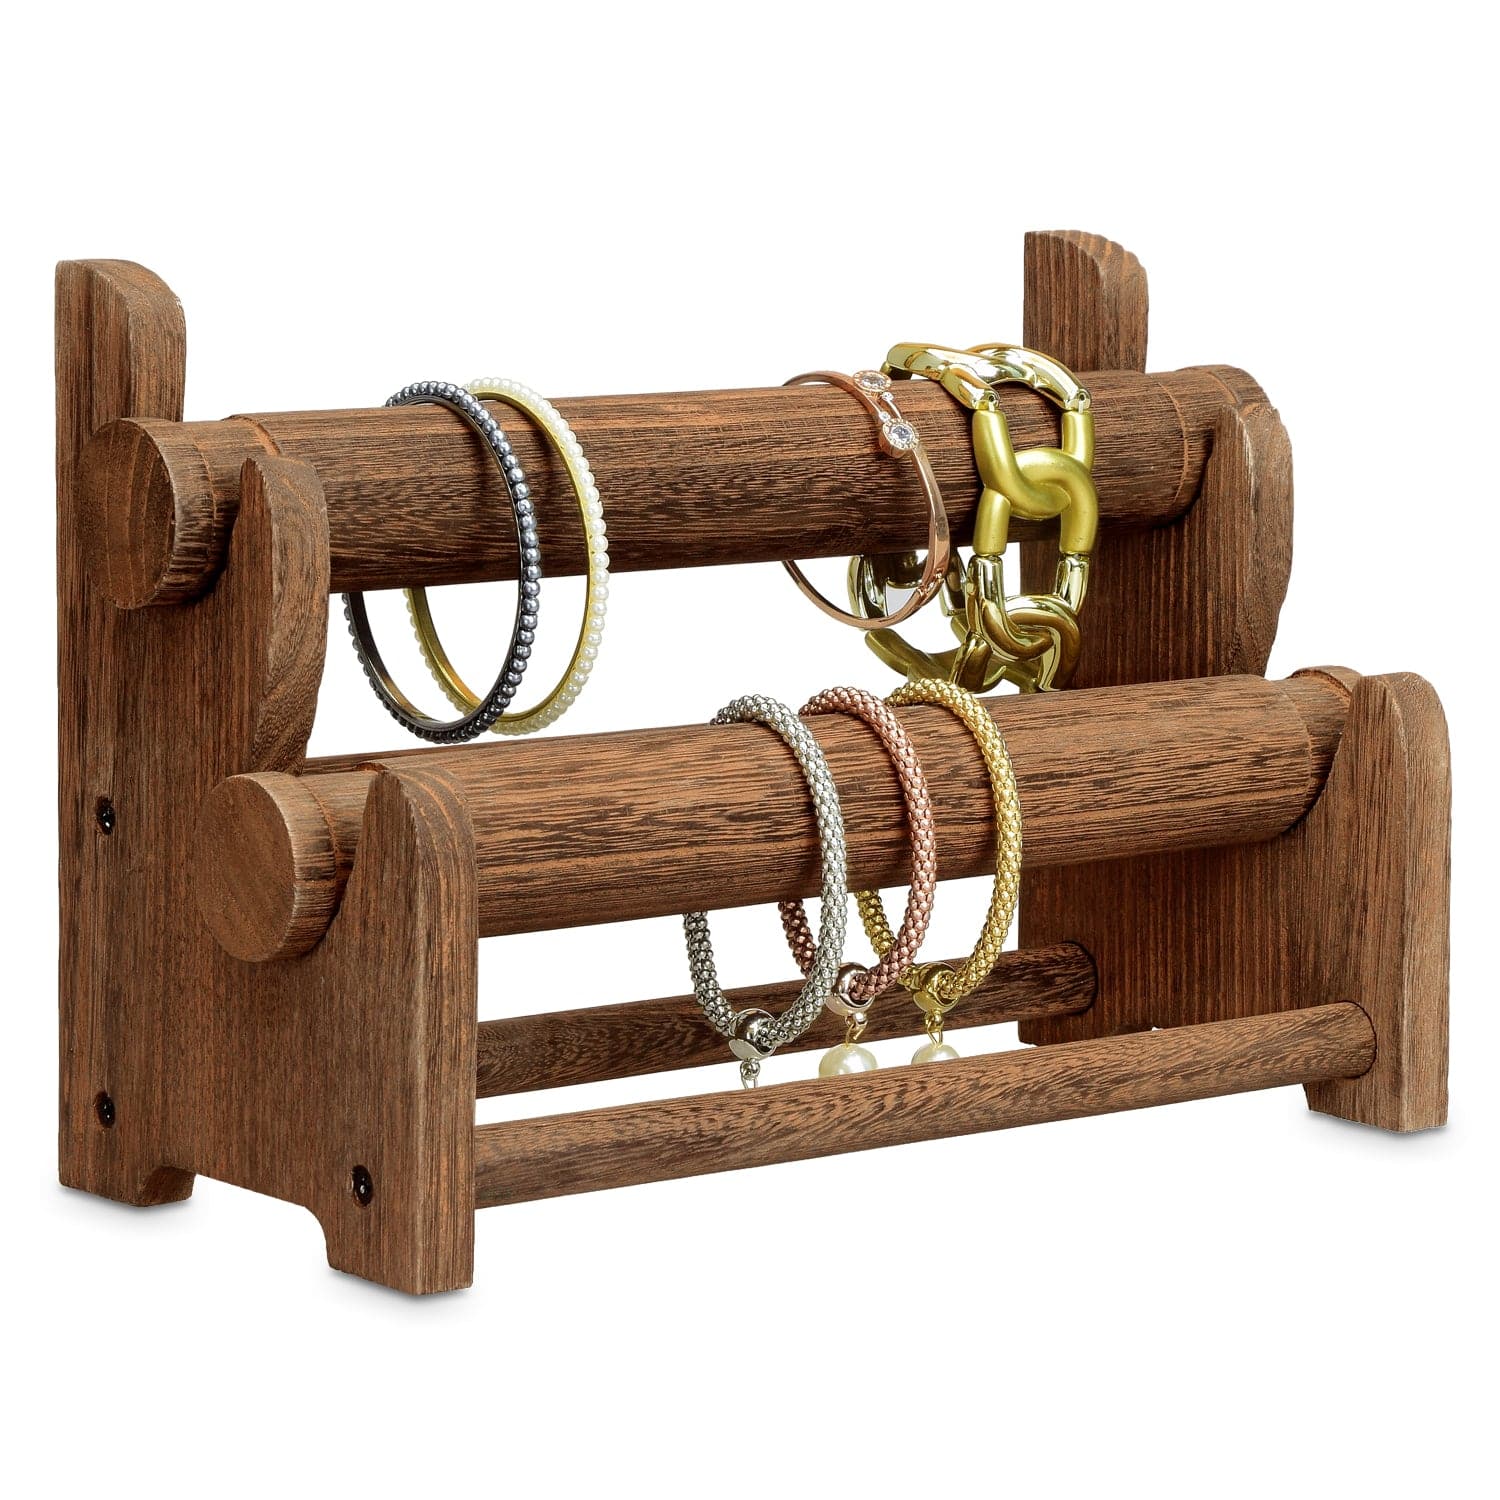 Bracelet Stand and Display 5 Tier Bracelet Holder Wooden Bracelet Organizer  Disp